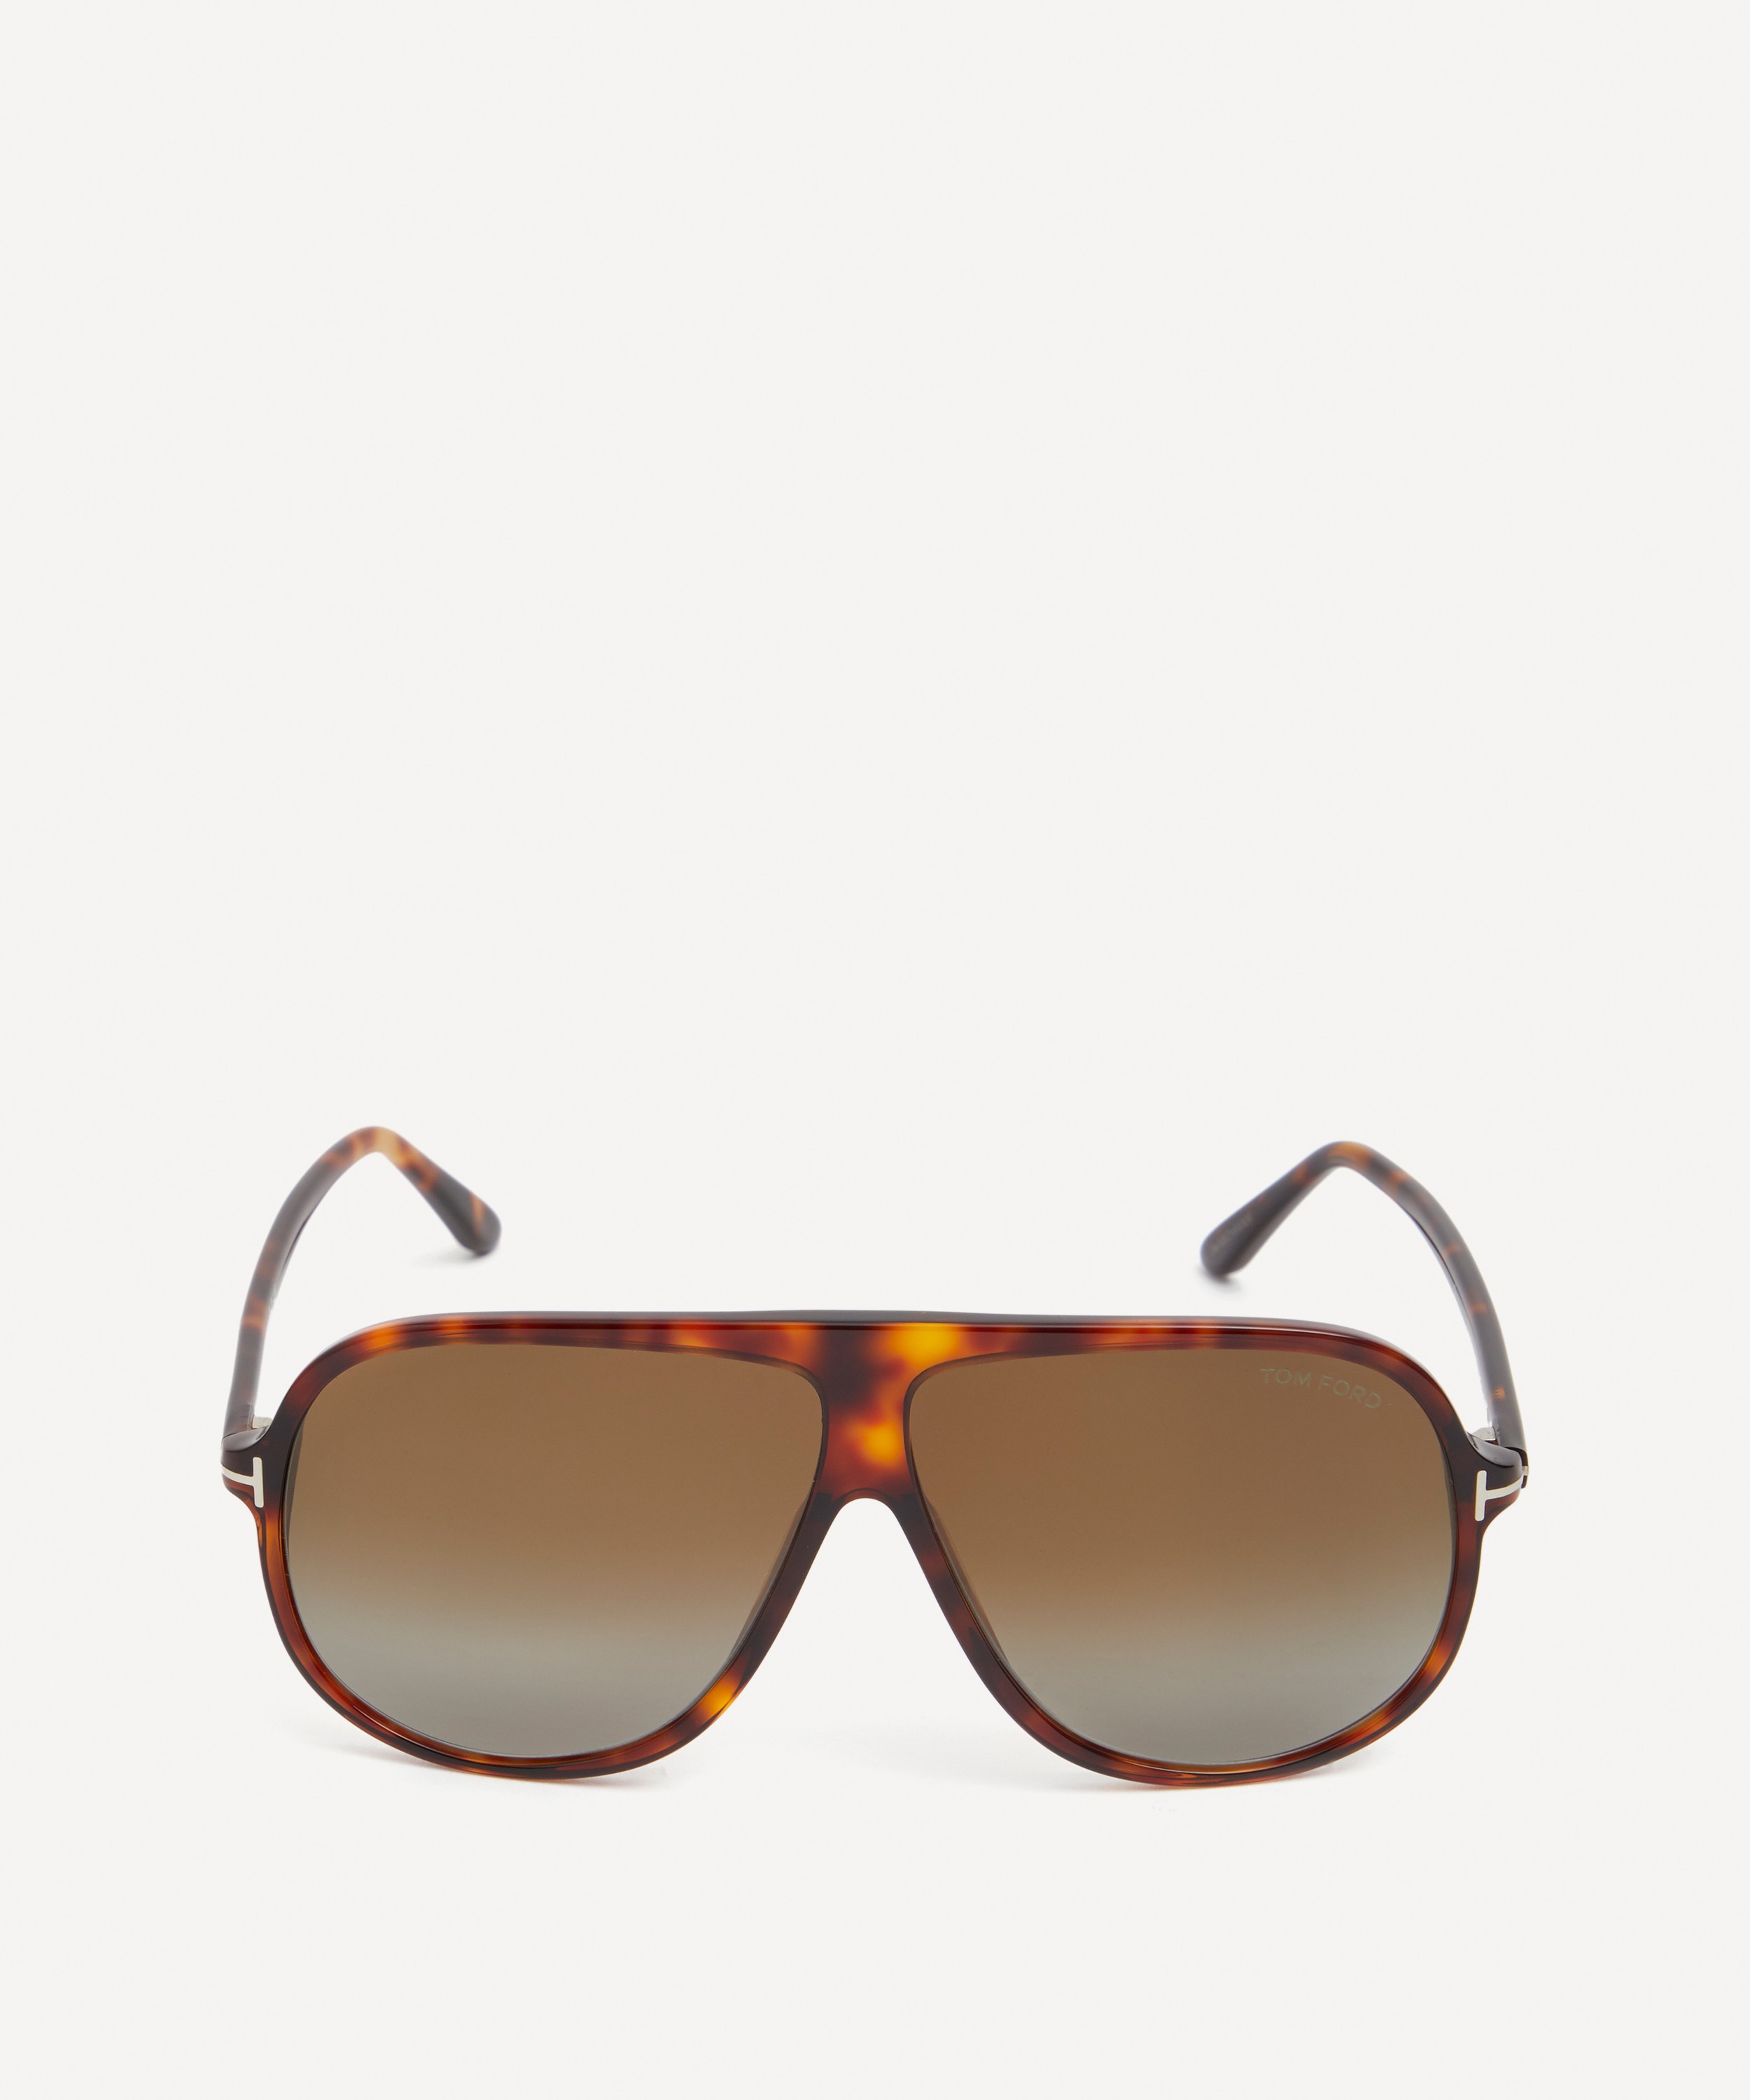 Tom Ford - Spencer Acetate Sunglasses